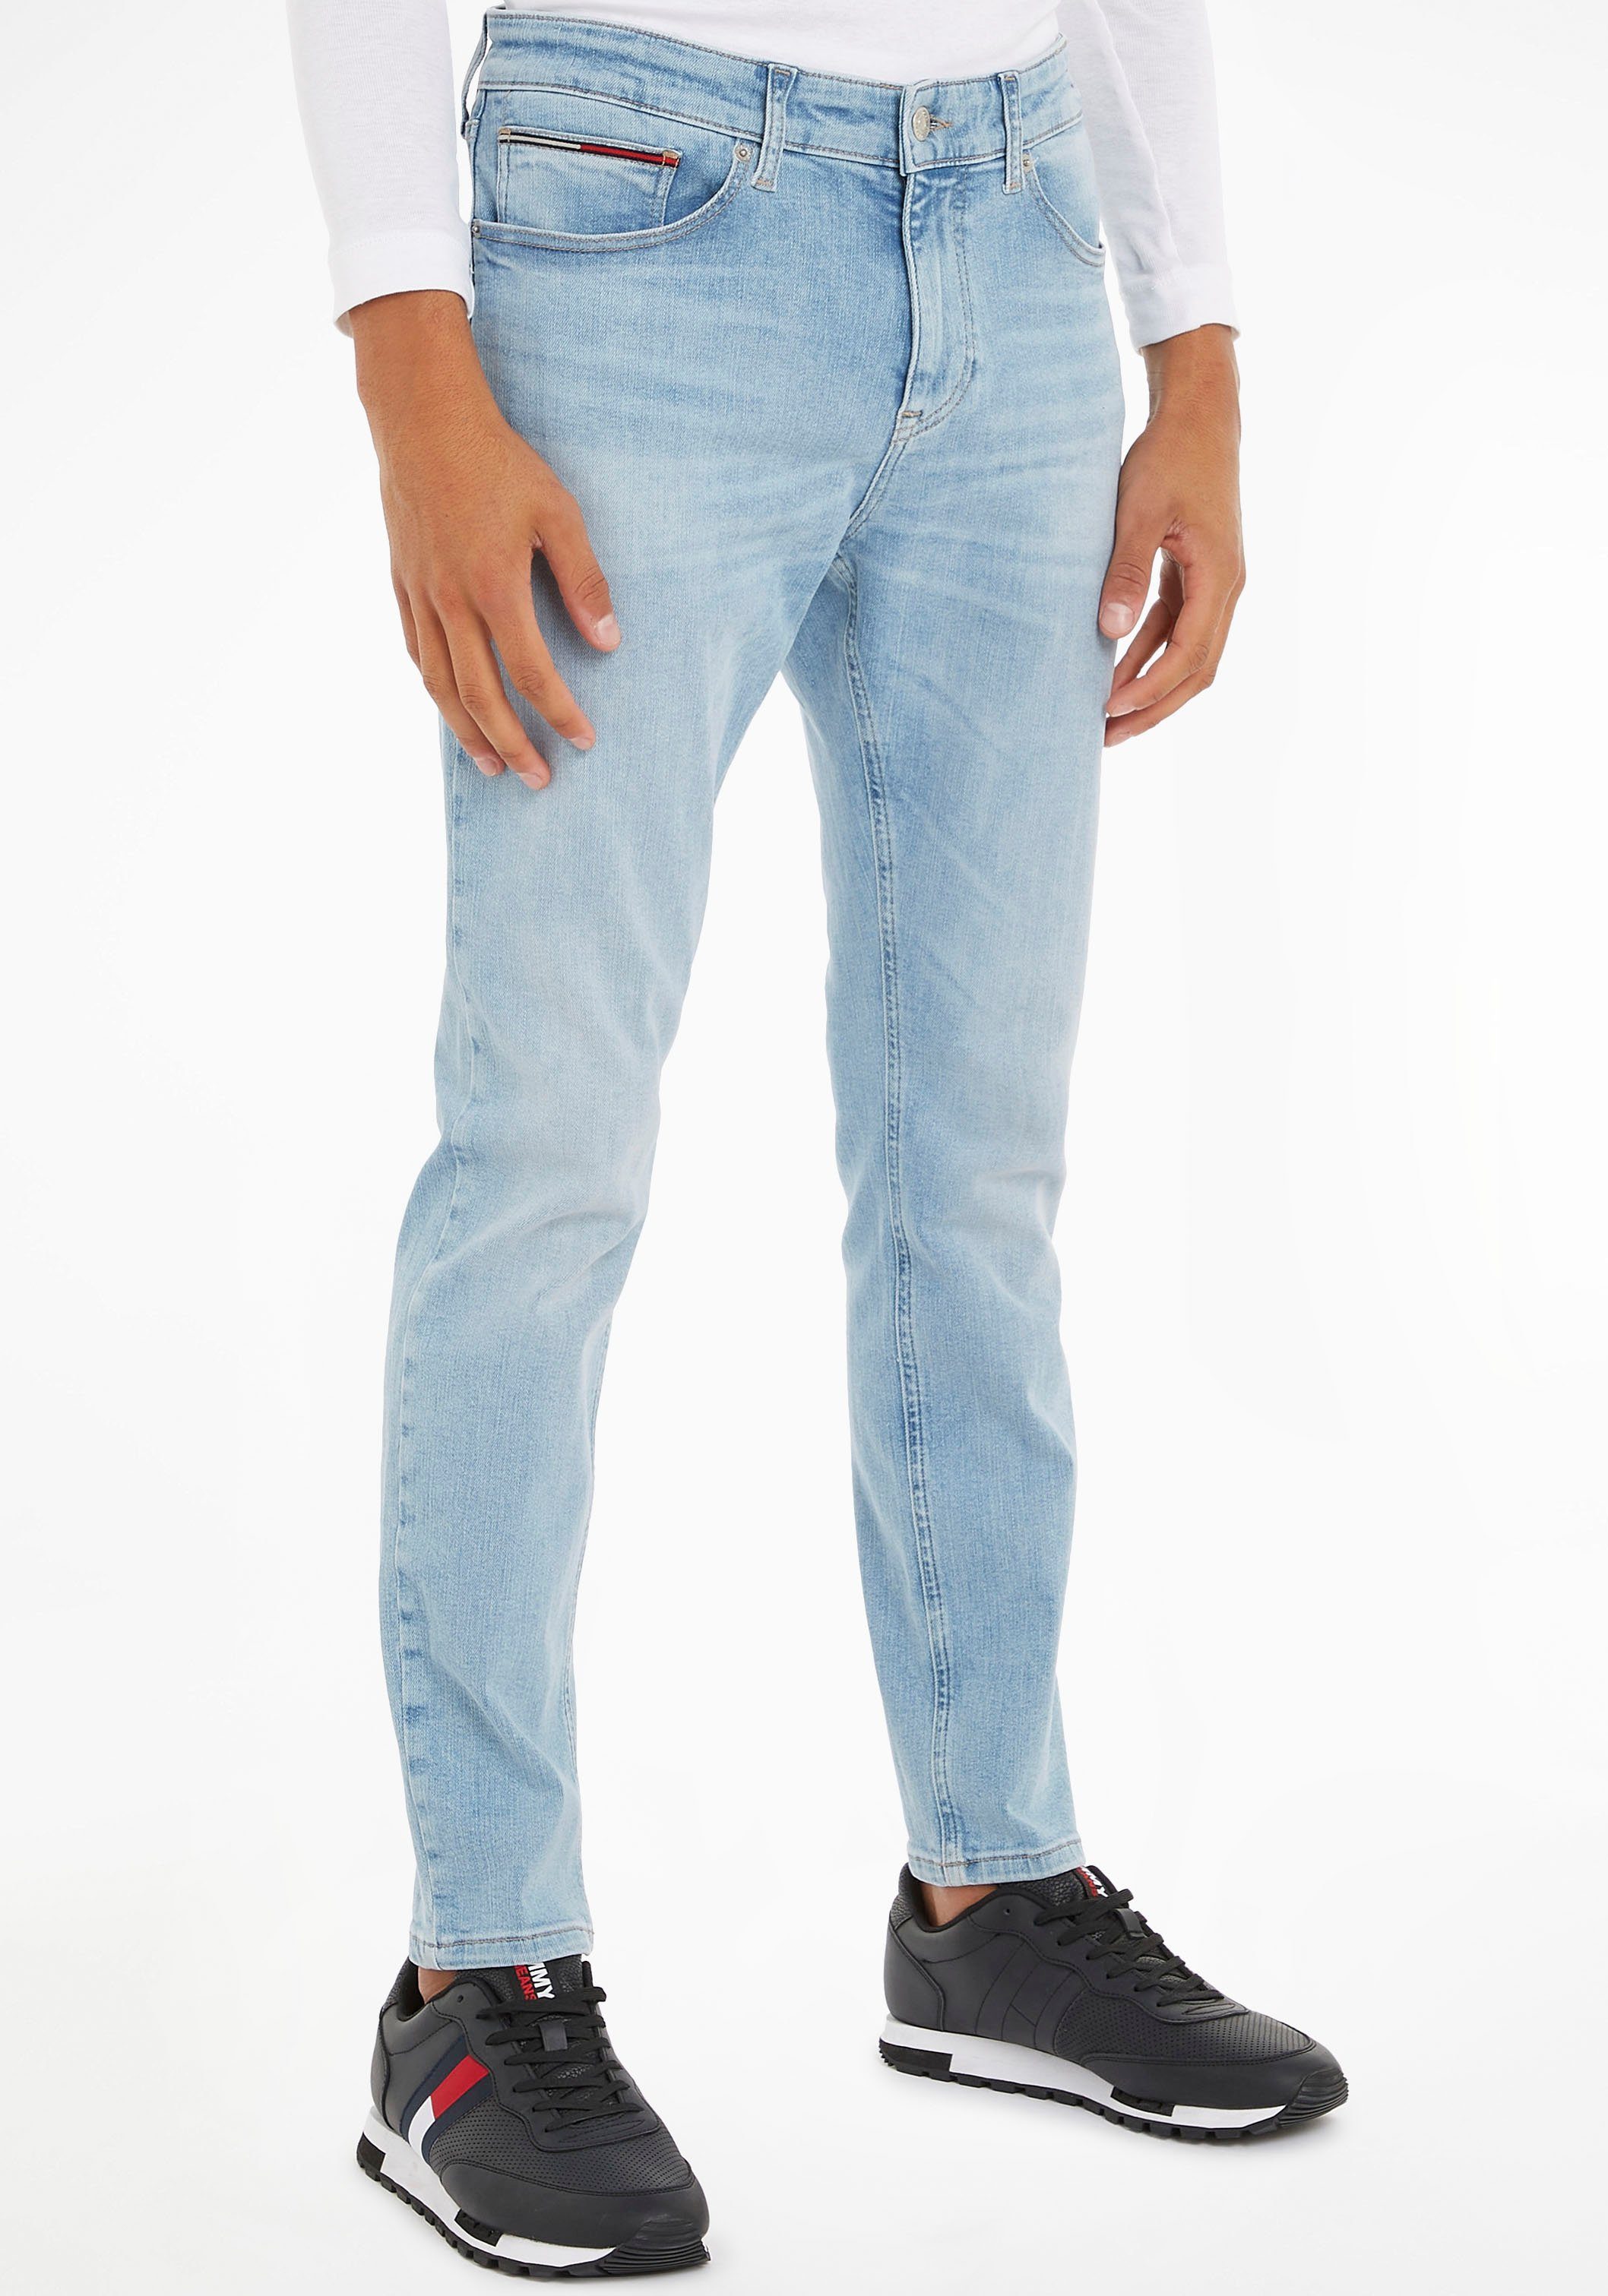 Jeans Lederbadge mit Slim-fit-Jeans TPRD denim Tommy SLIM light AUSTIN